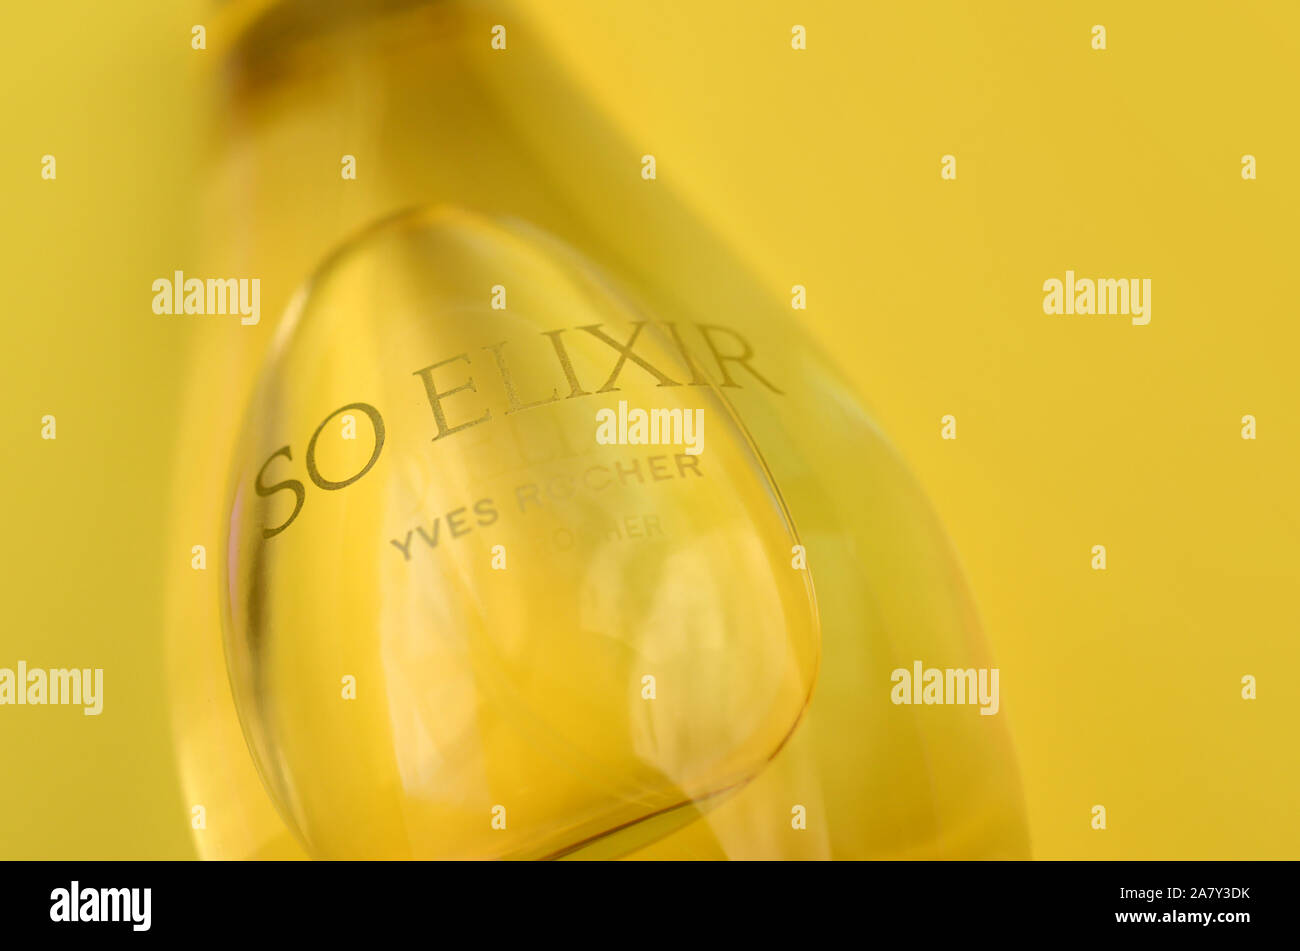 KHARKOV, Ucrania - 21 de octubre de 2019: botella de perfume Elixir por Yves Rocher sobre fondo de color amarillo brillante. Yves Rocher fue pionero de la moderna u Foto de stock